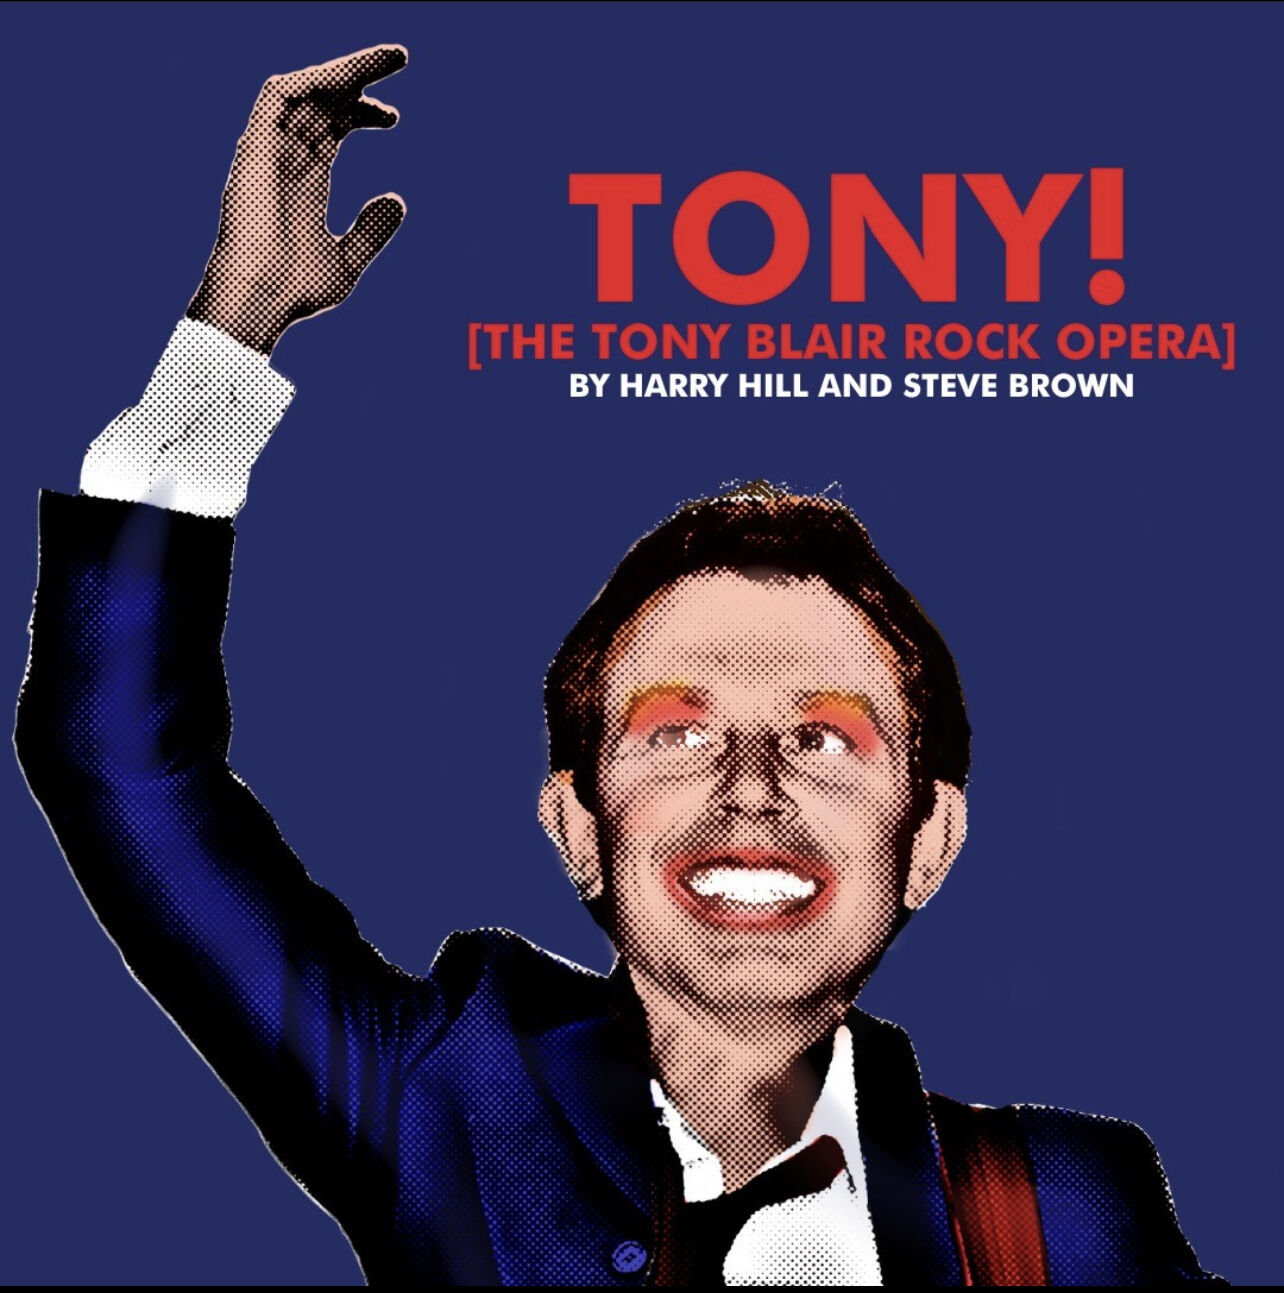 TONY! The Tony Blair Rock Opera